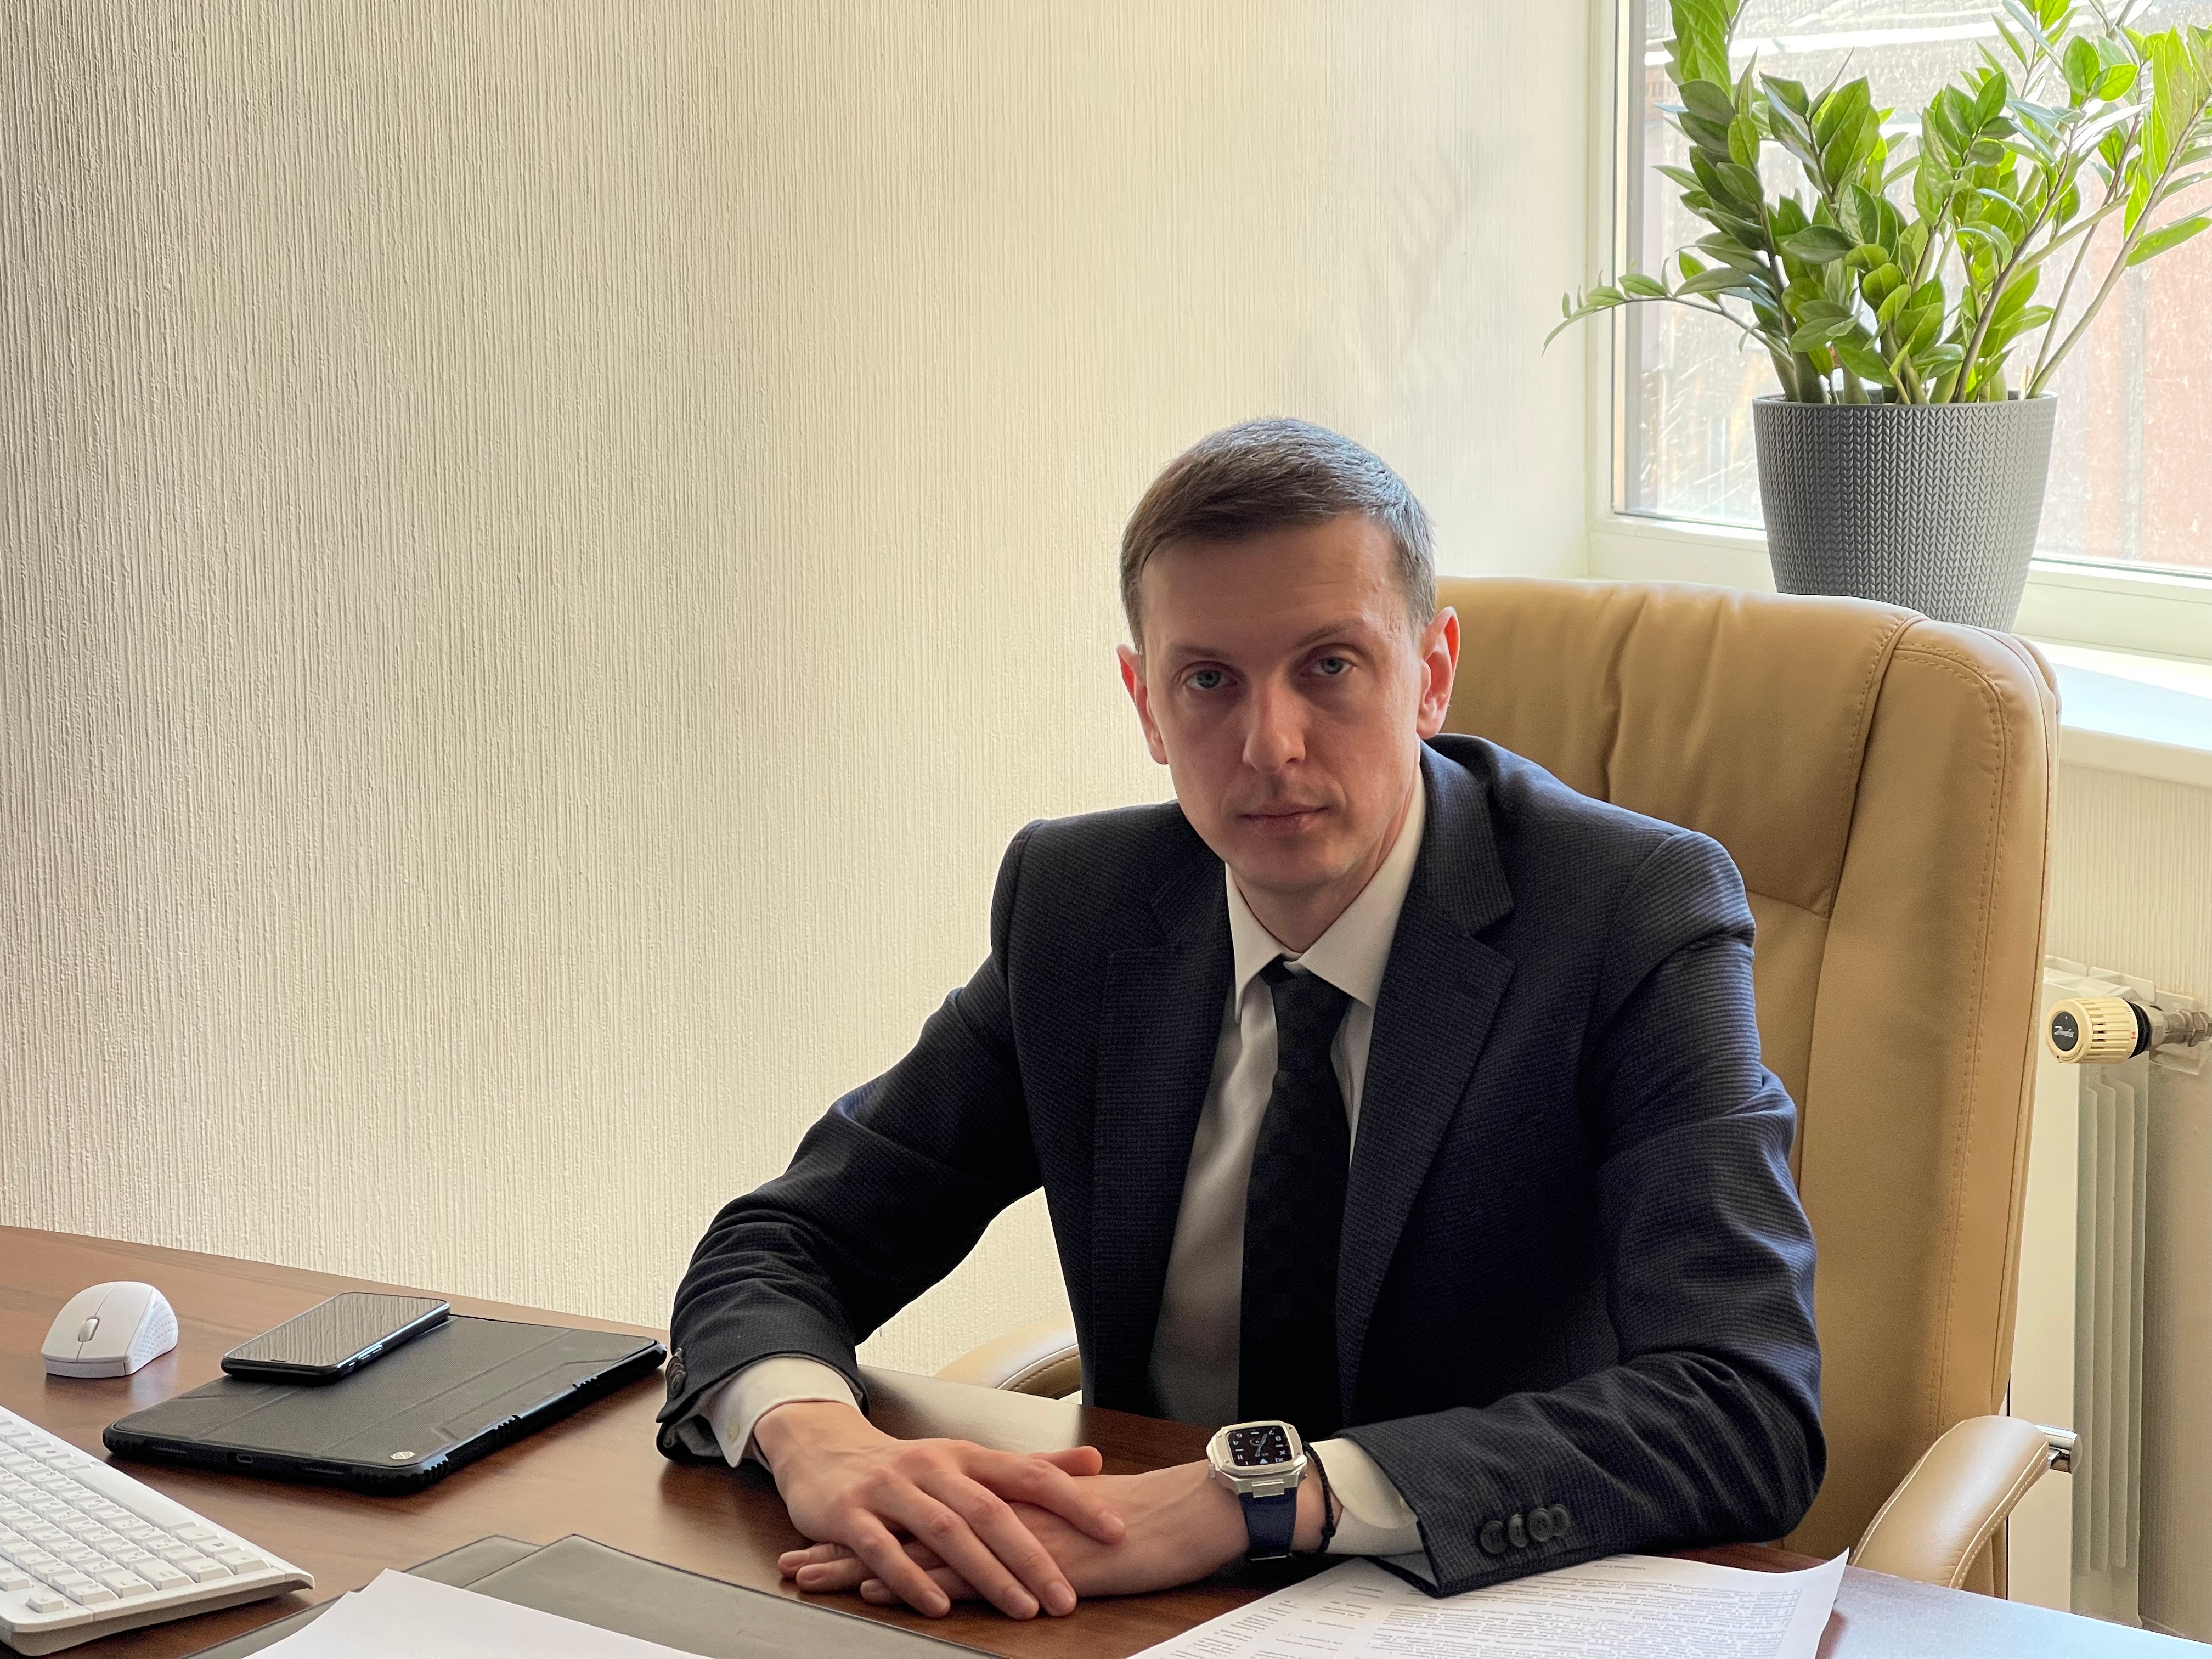 Павел Пономаренко: “Законность всего, что мы делаем, для нас во главе угла"